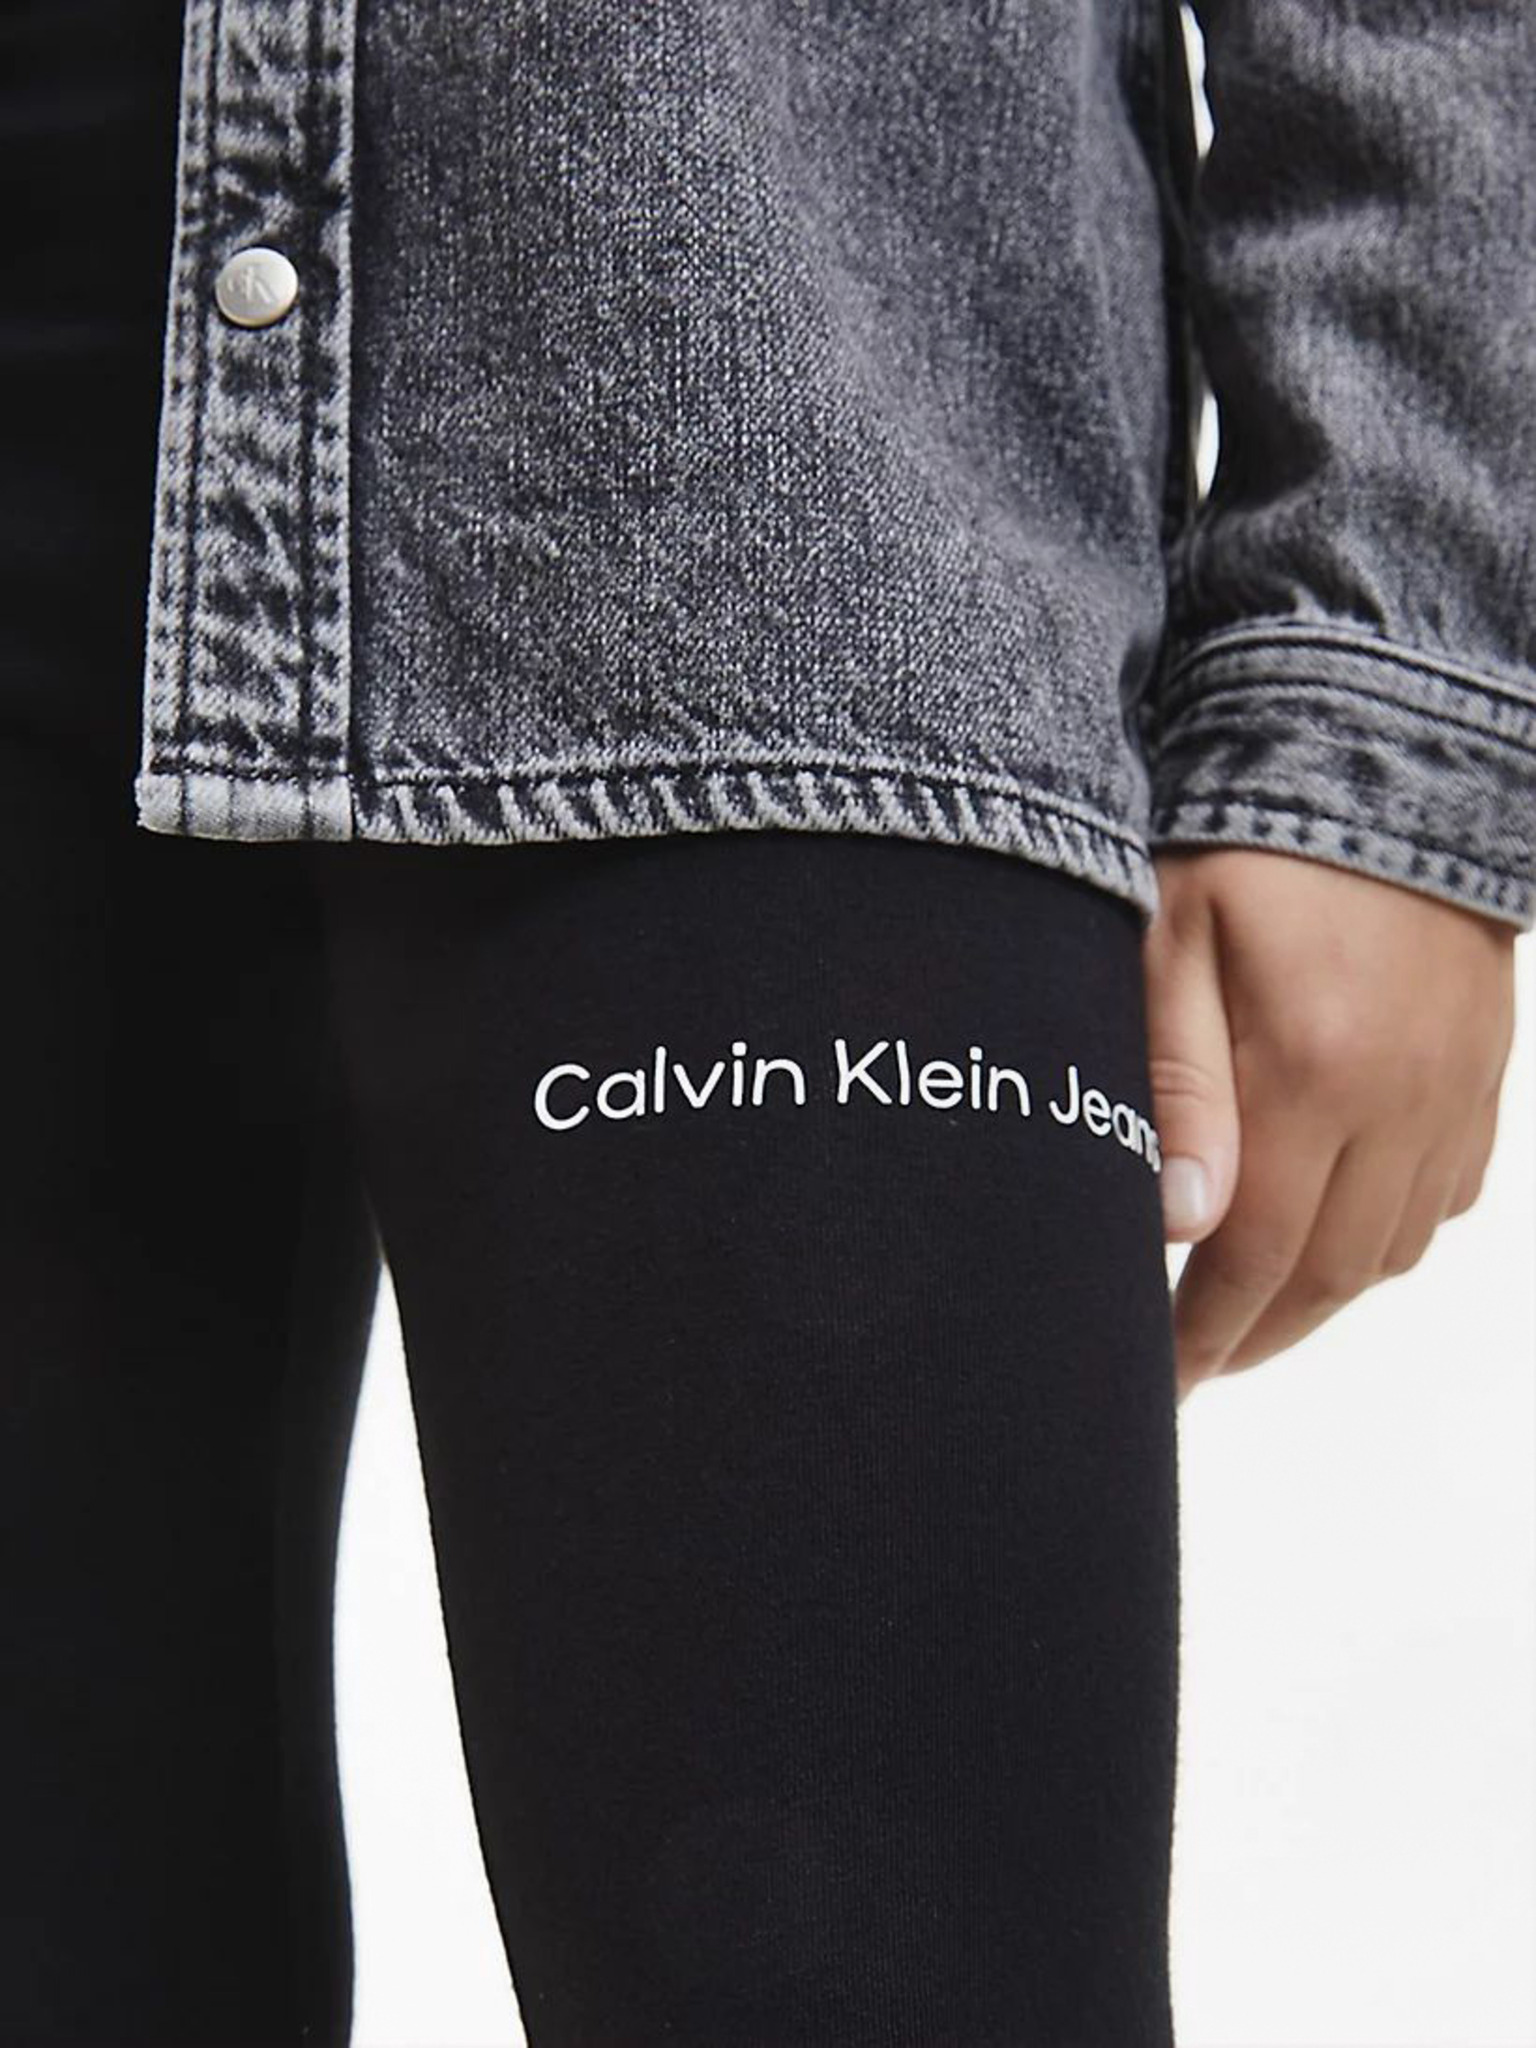 JR508 Calvin Klein Jeans Black Ombre Pride-Logo Leggings Size S | eBay